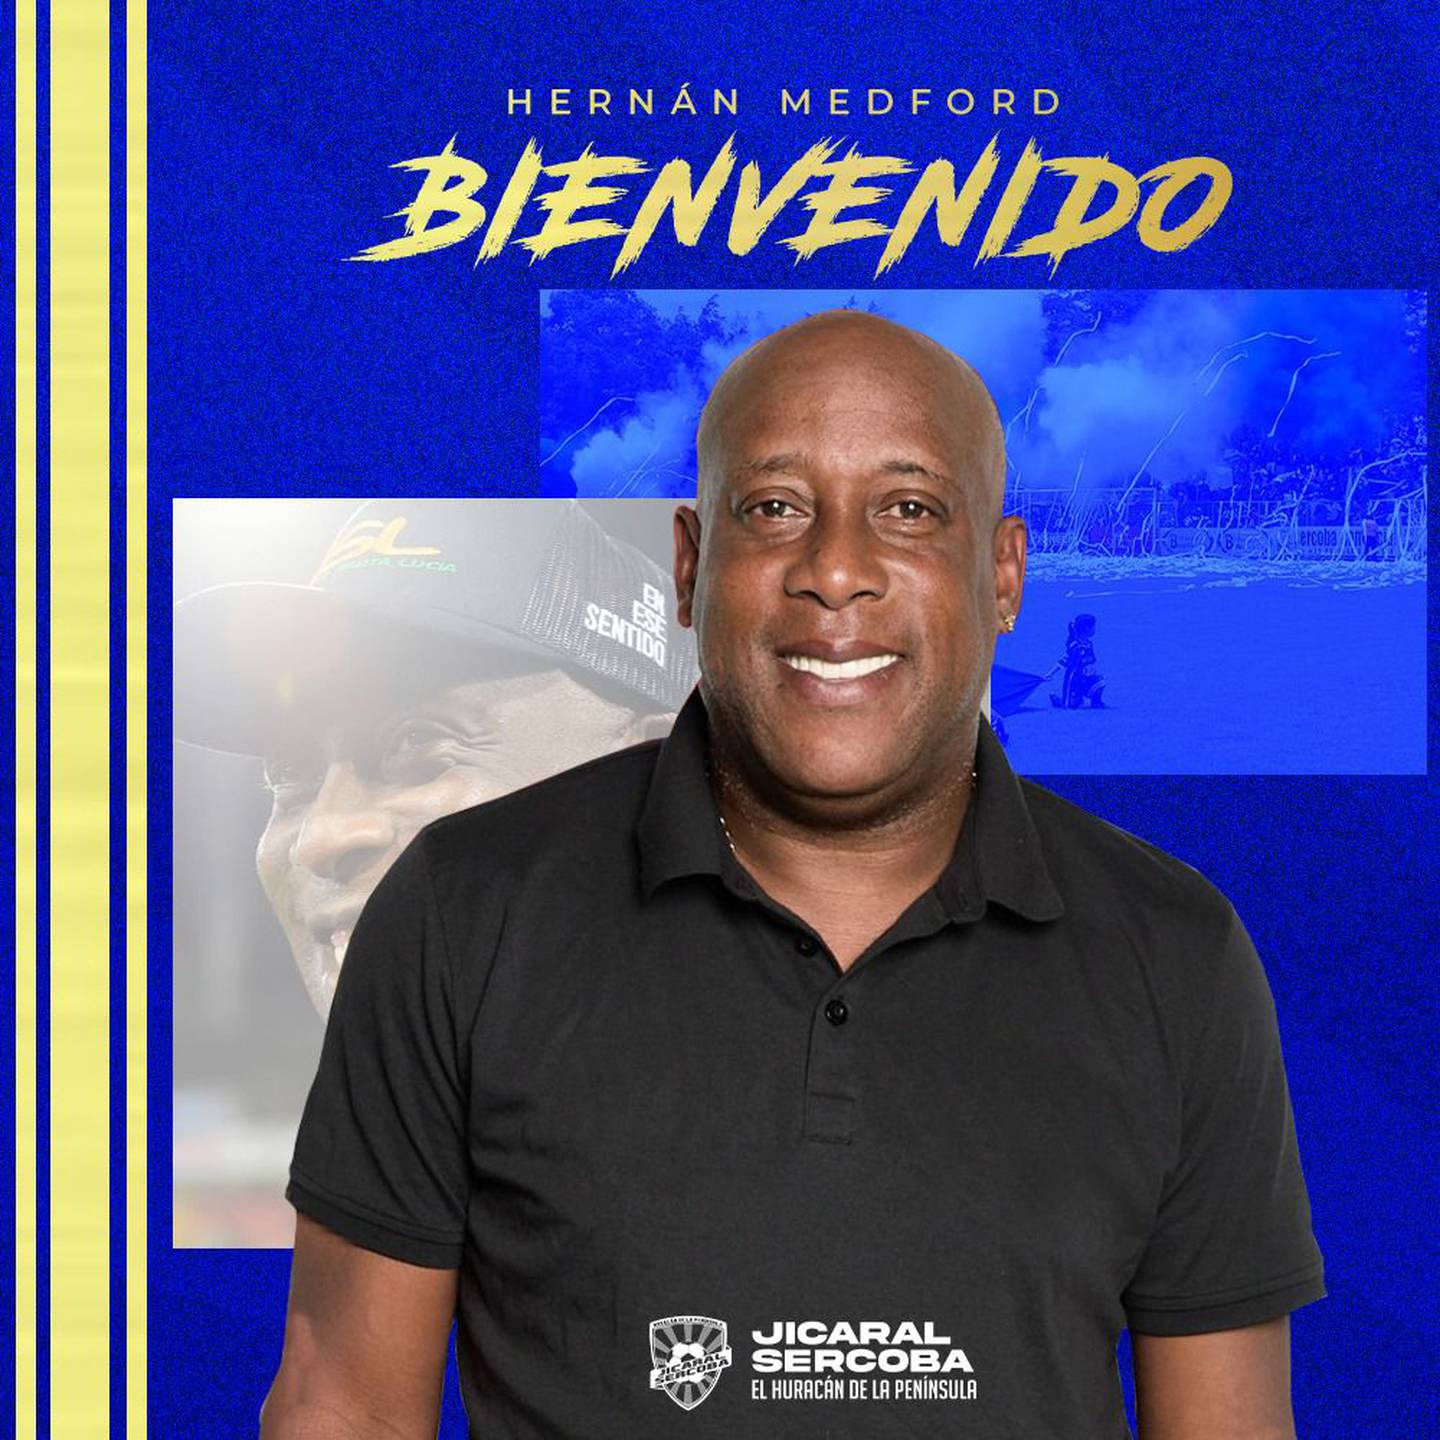 Hernán Medford fue presentado como el nuevo asesor deportivo de Jicaral. Prensa JIC.